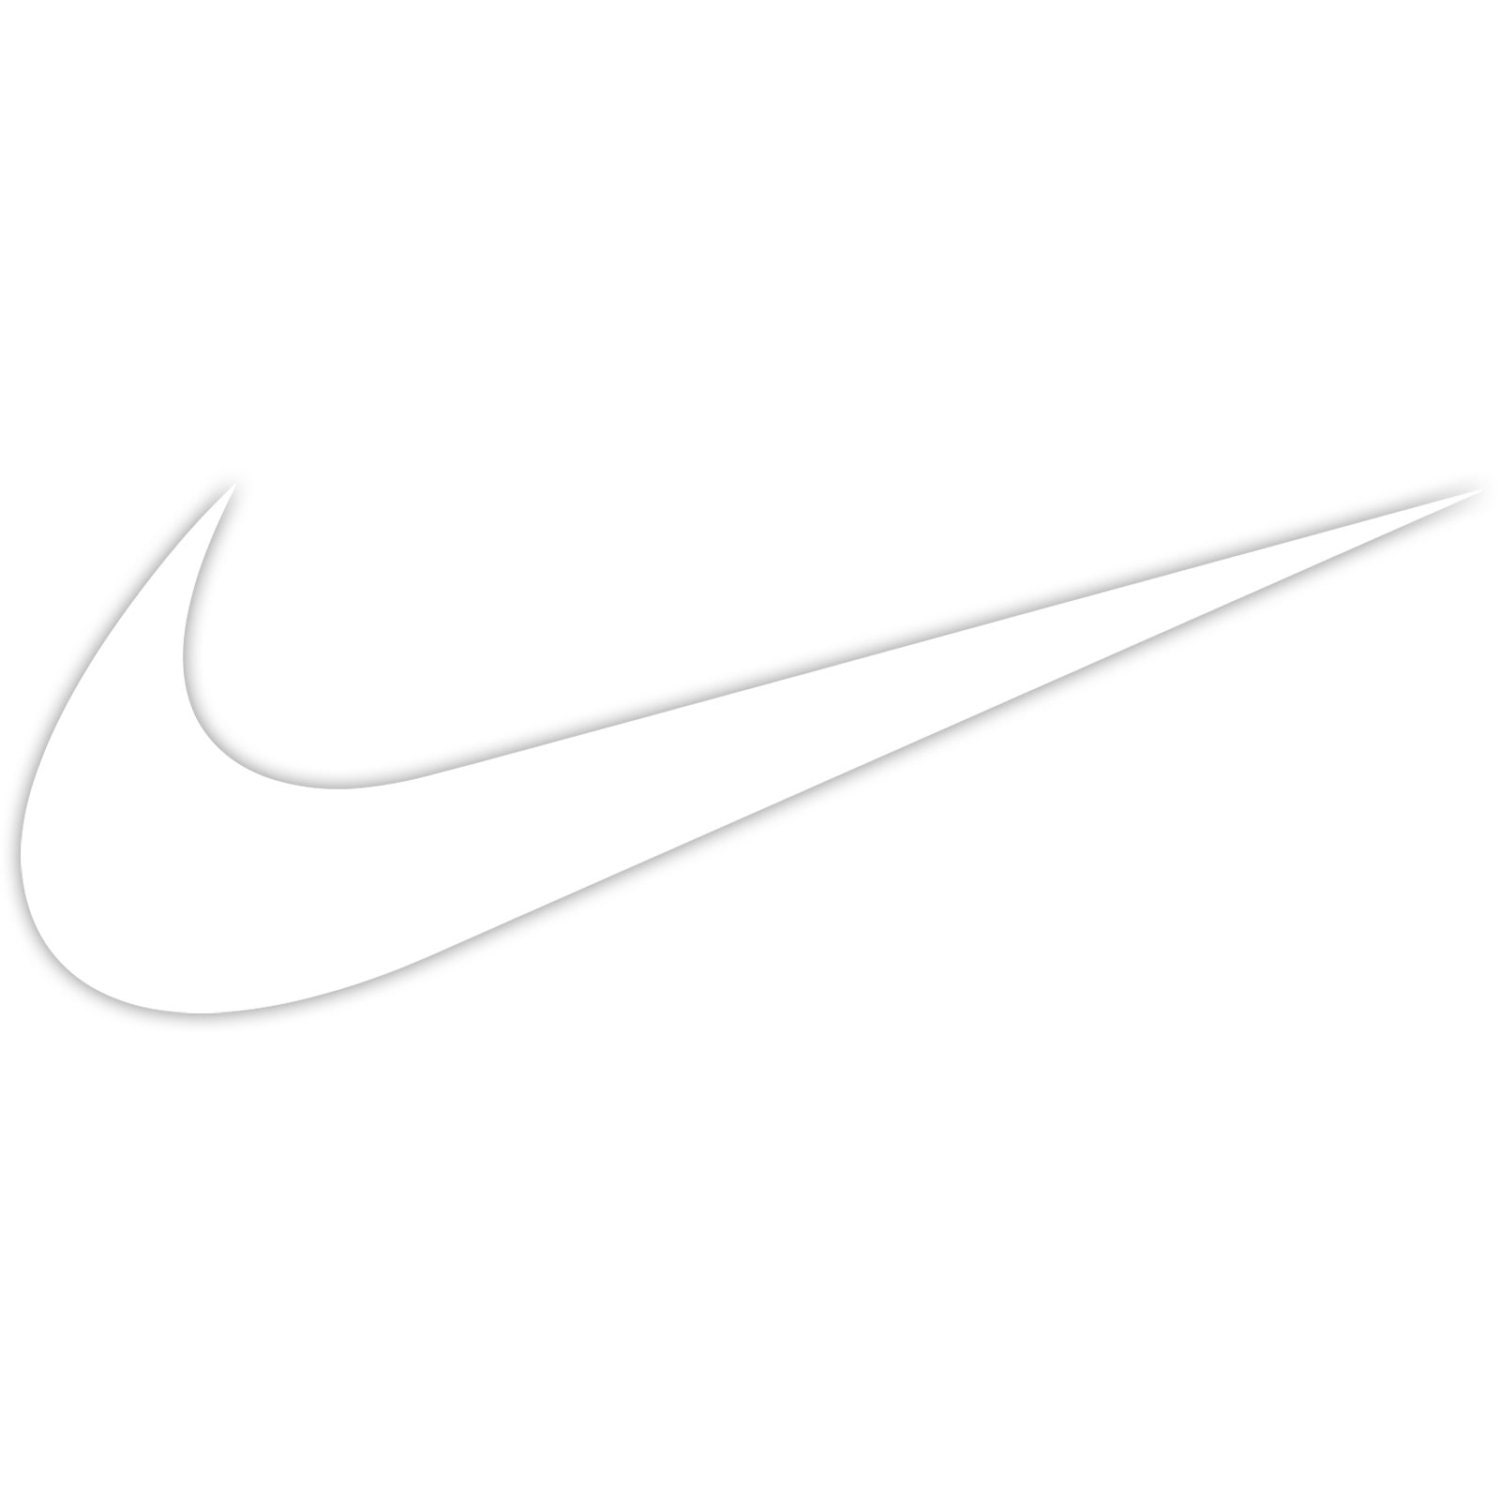 Nike Swoosh Logo Sticker Decal Car Truck Window Laptop Die Cut